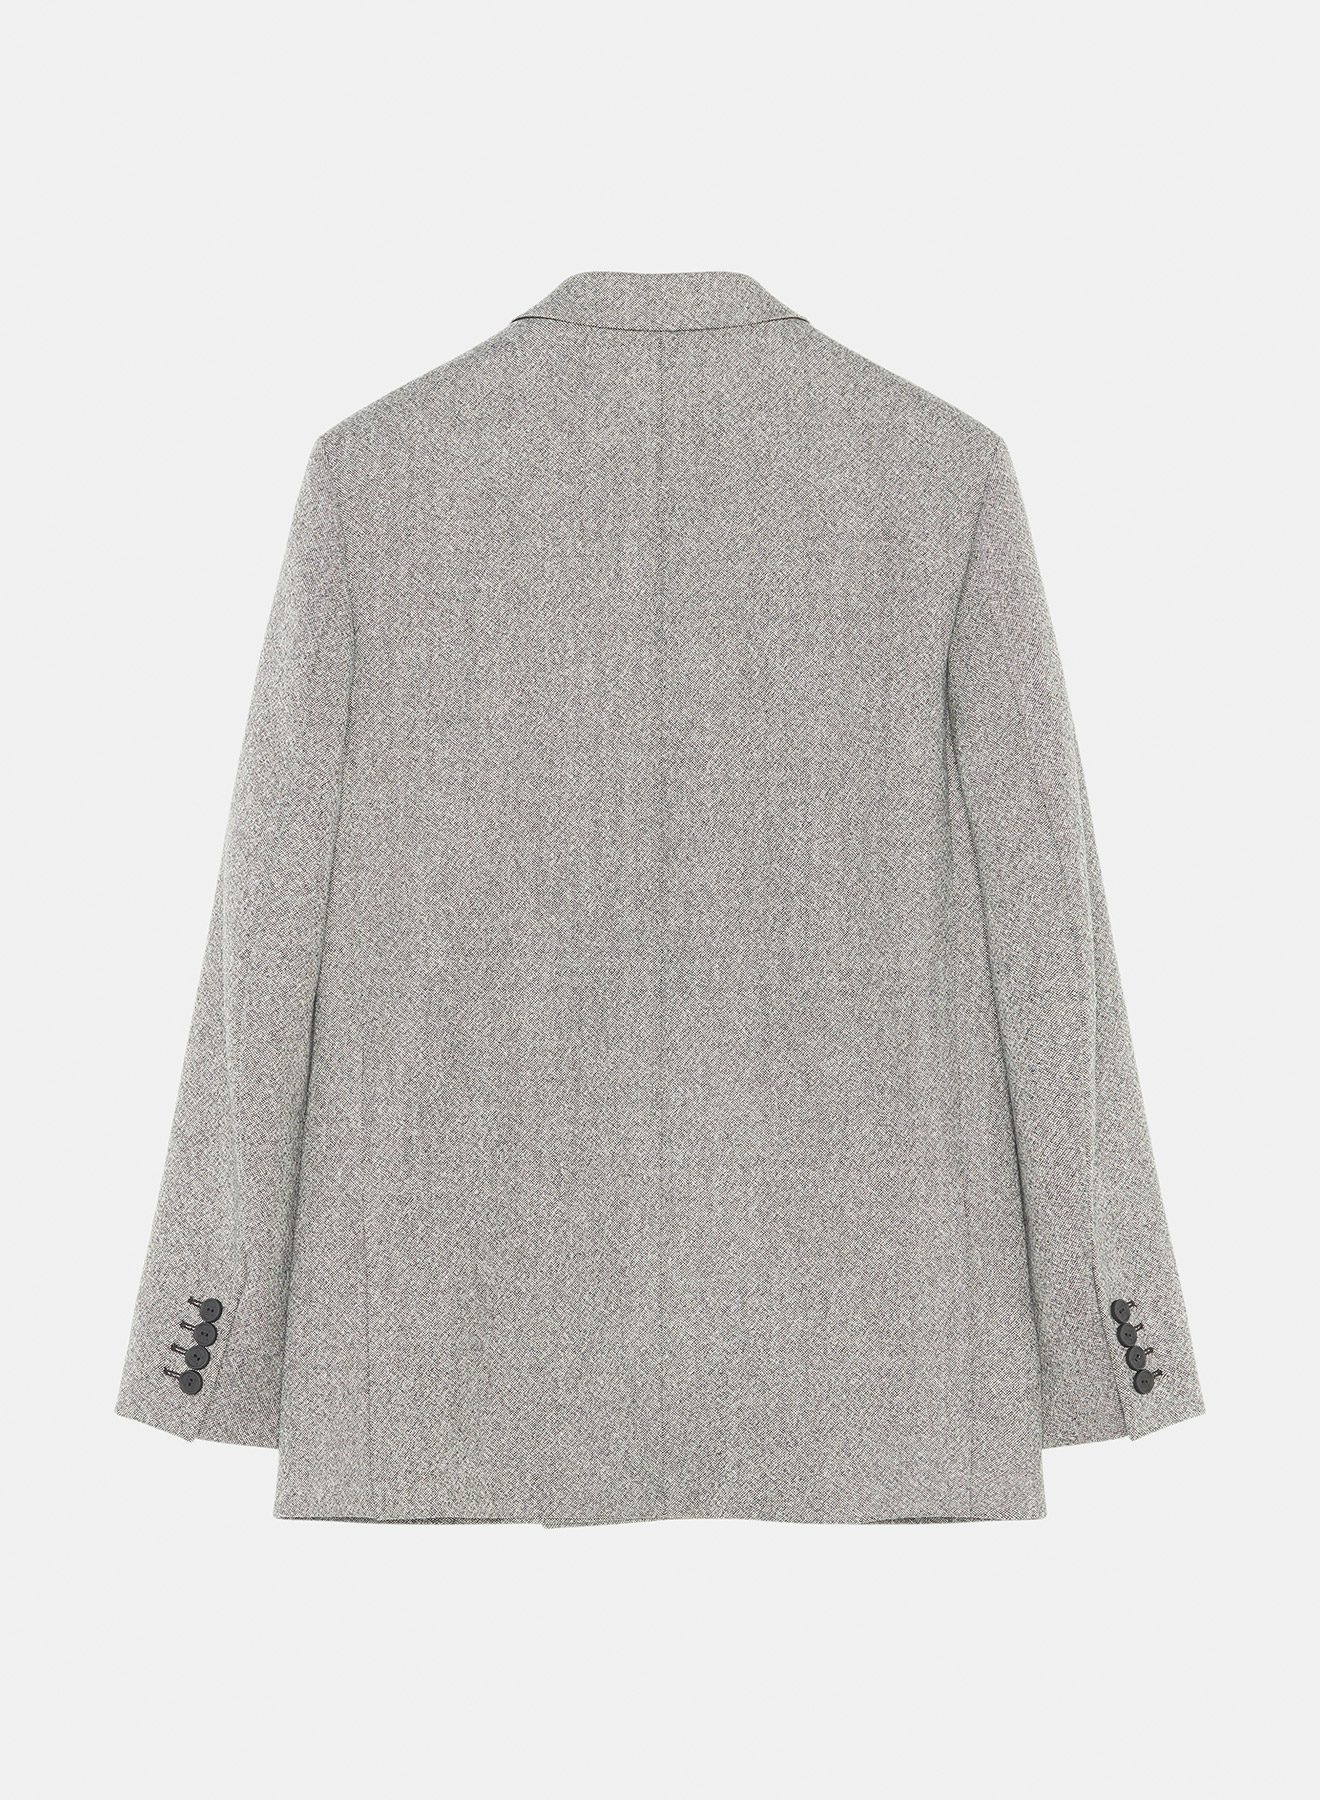 Veste en laine mouchetée avec cordons noir et blanc - Nina Ricci